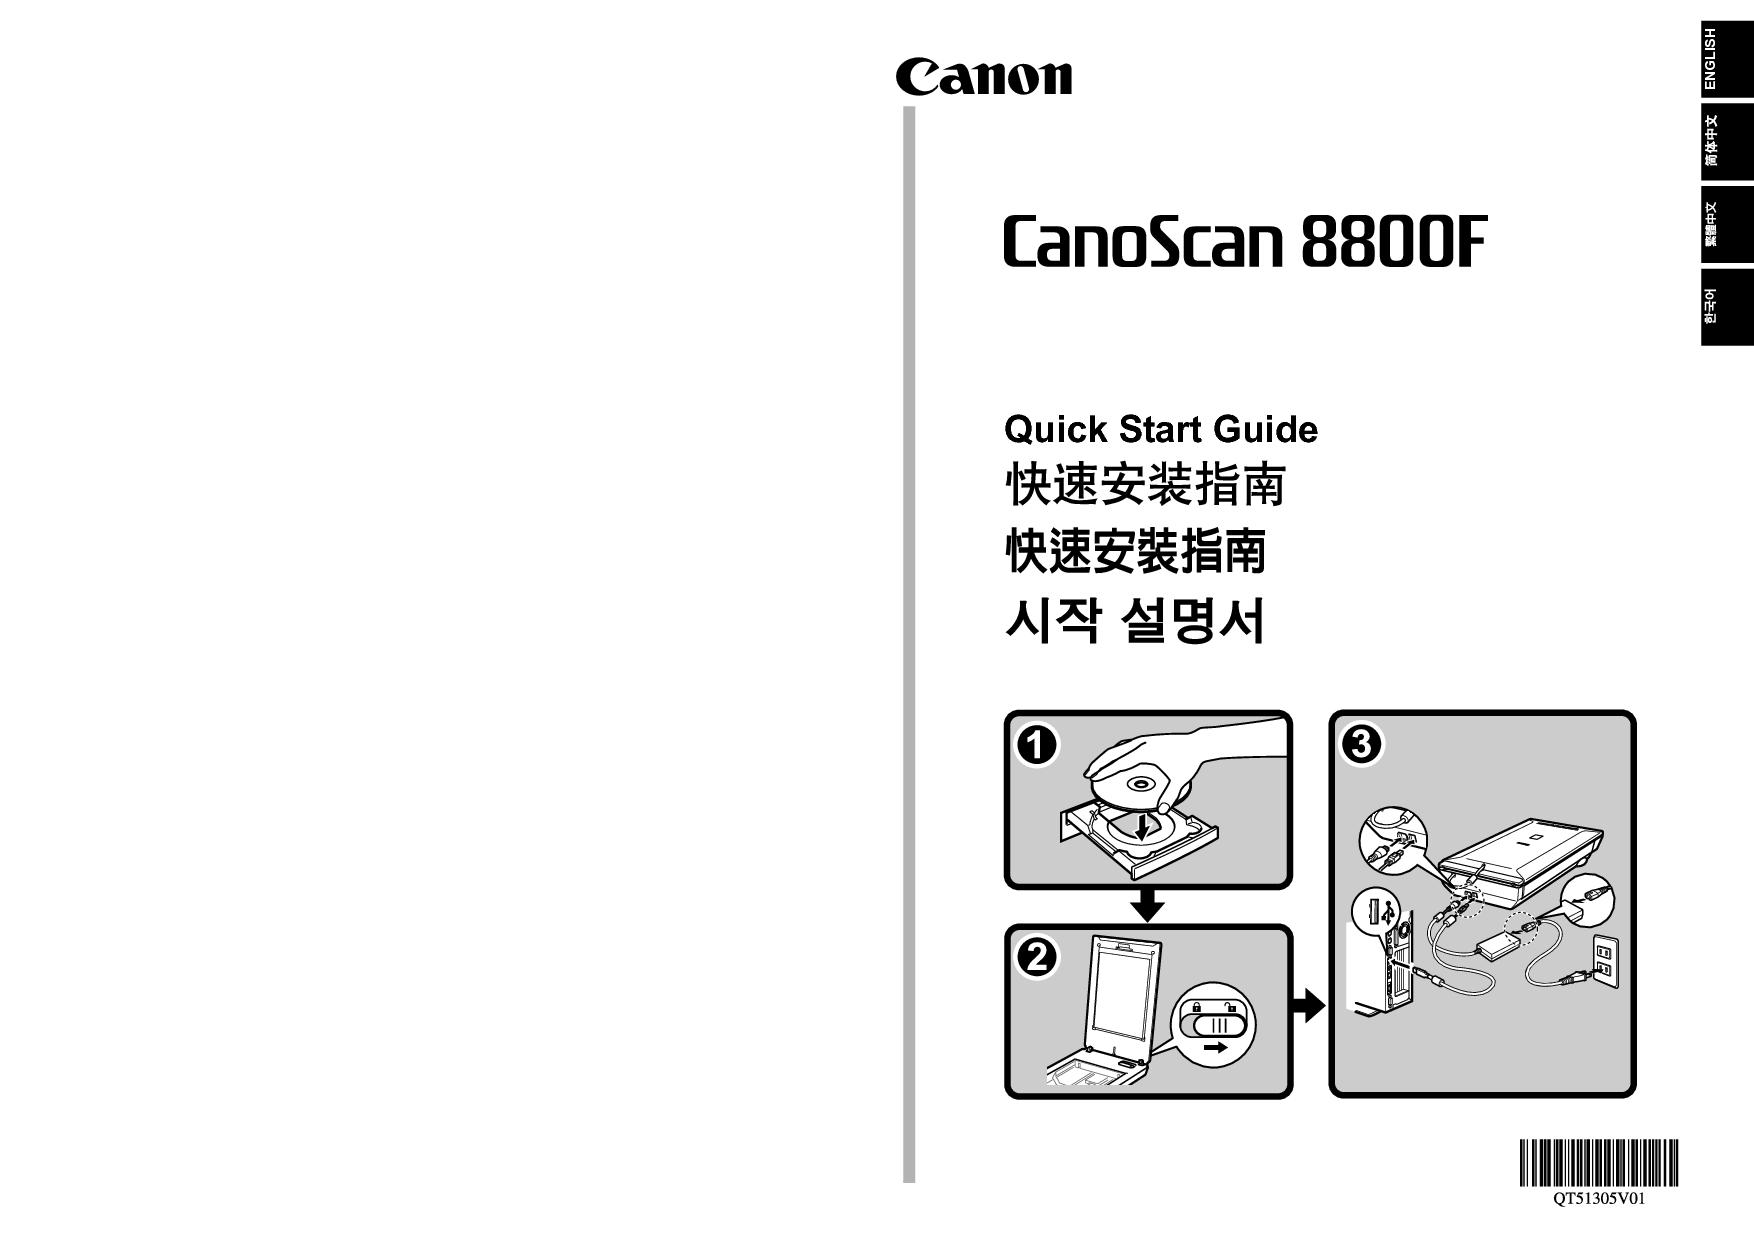 佳能 Canon CanoScan 8800F 快速安装指南 封面